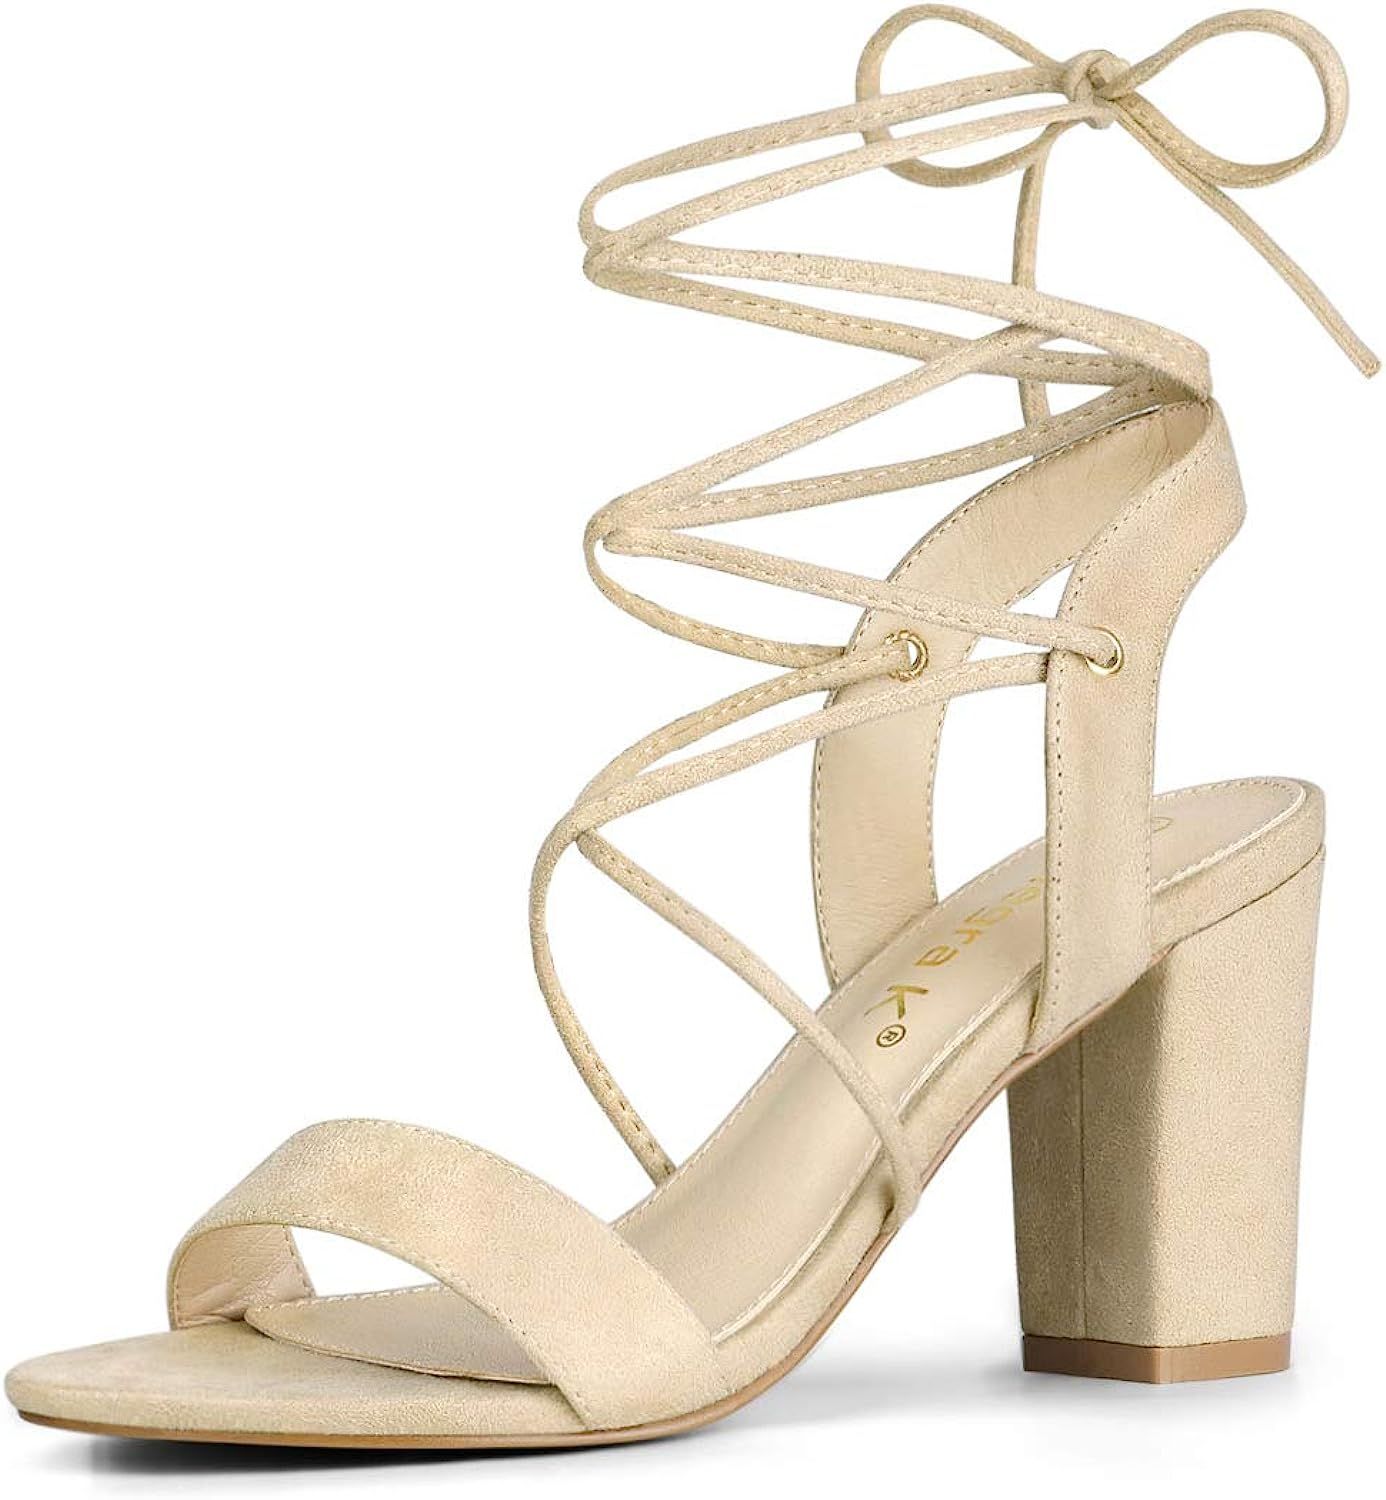 Allegra K Women's Lace Up Block High Heels Sandals | Amazon (US)